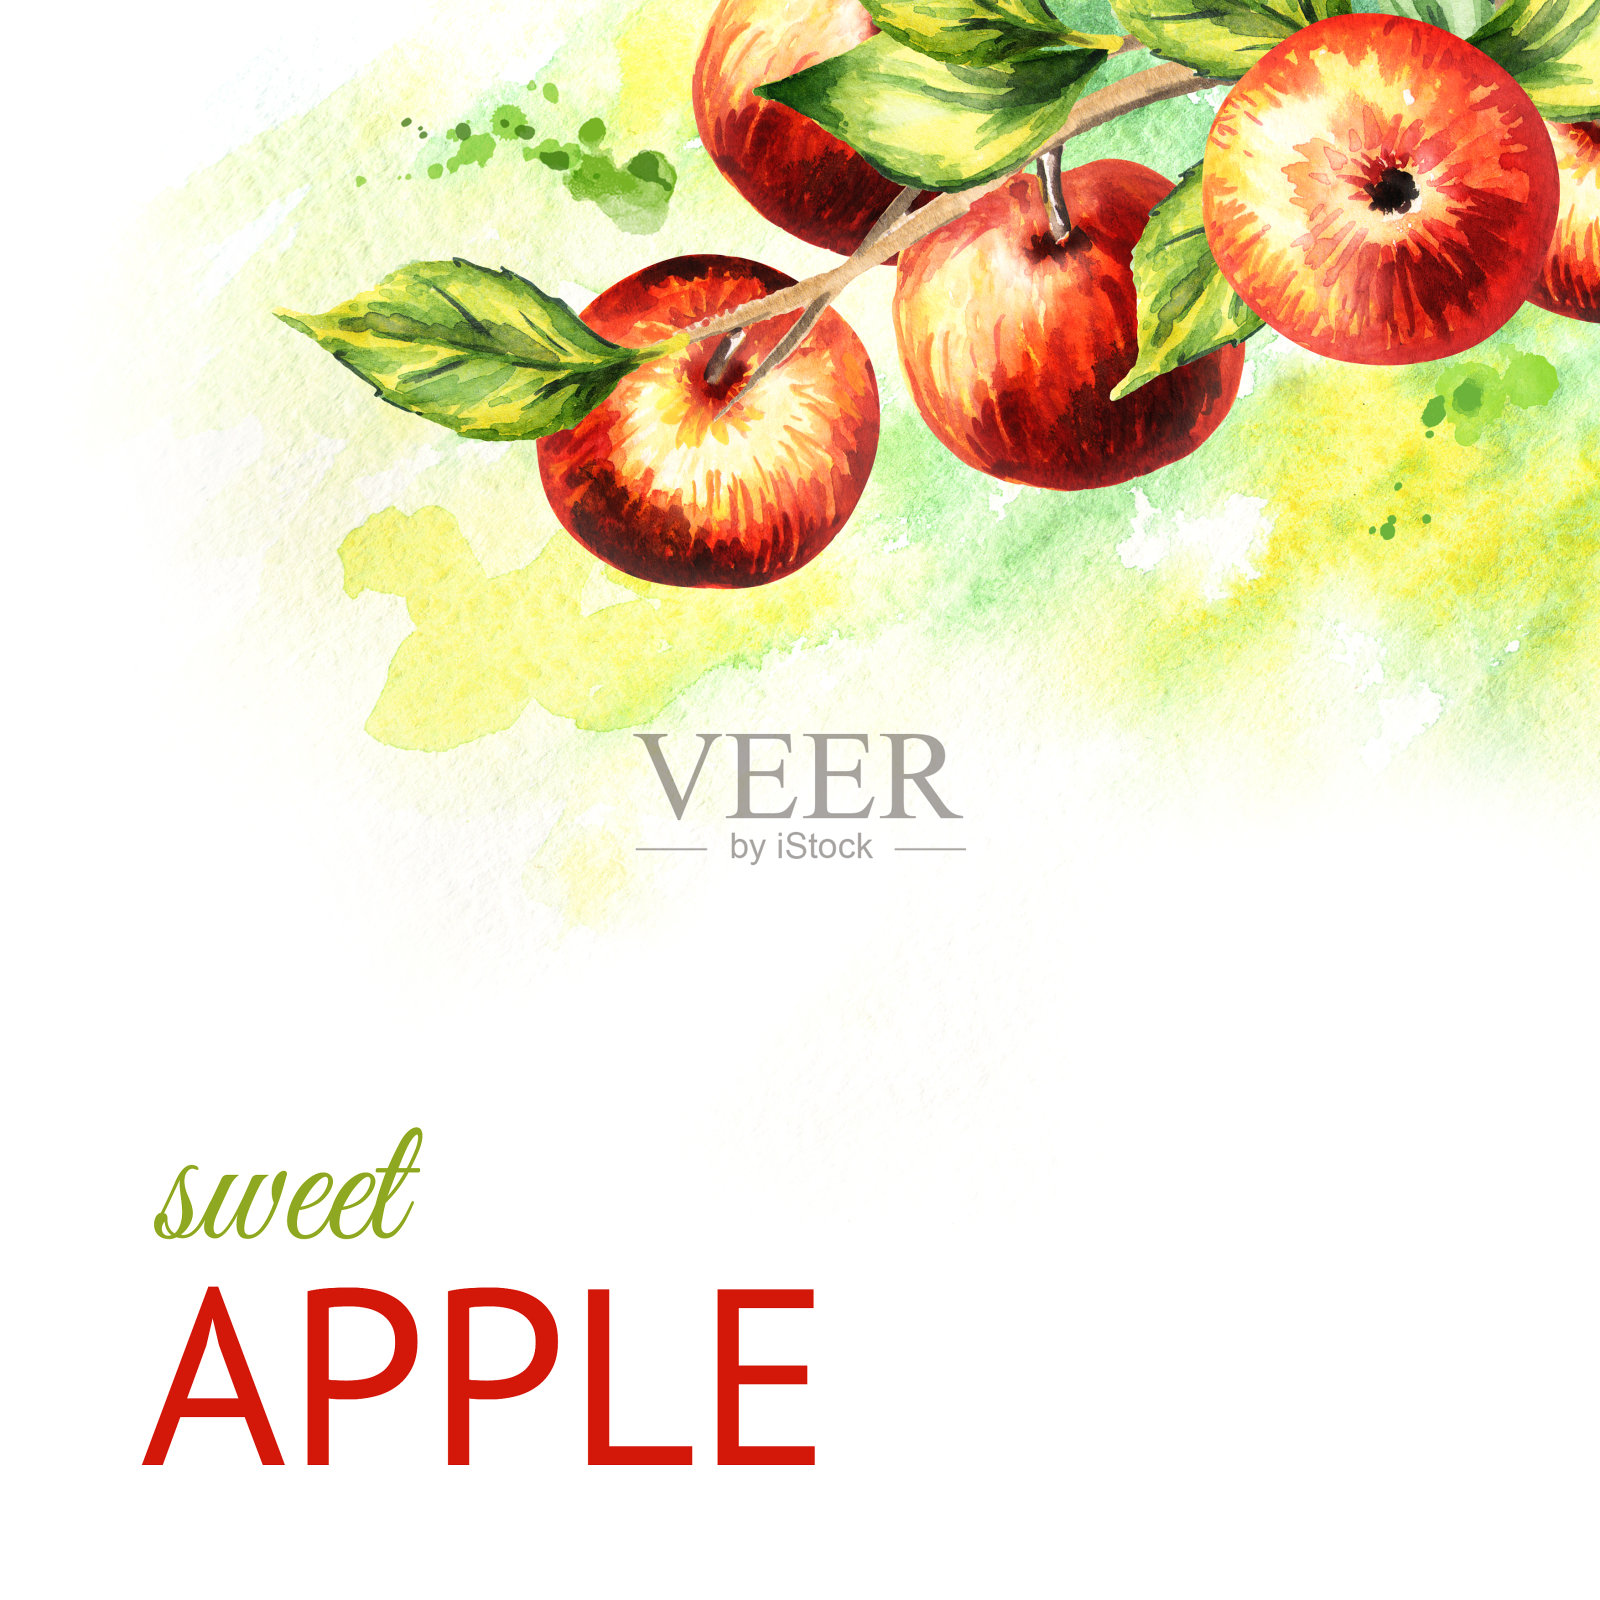 树枝上有红苹果。手绘水彩背景插画图片素材